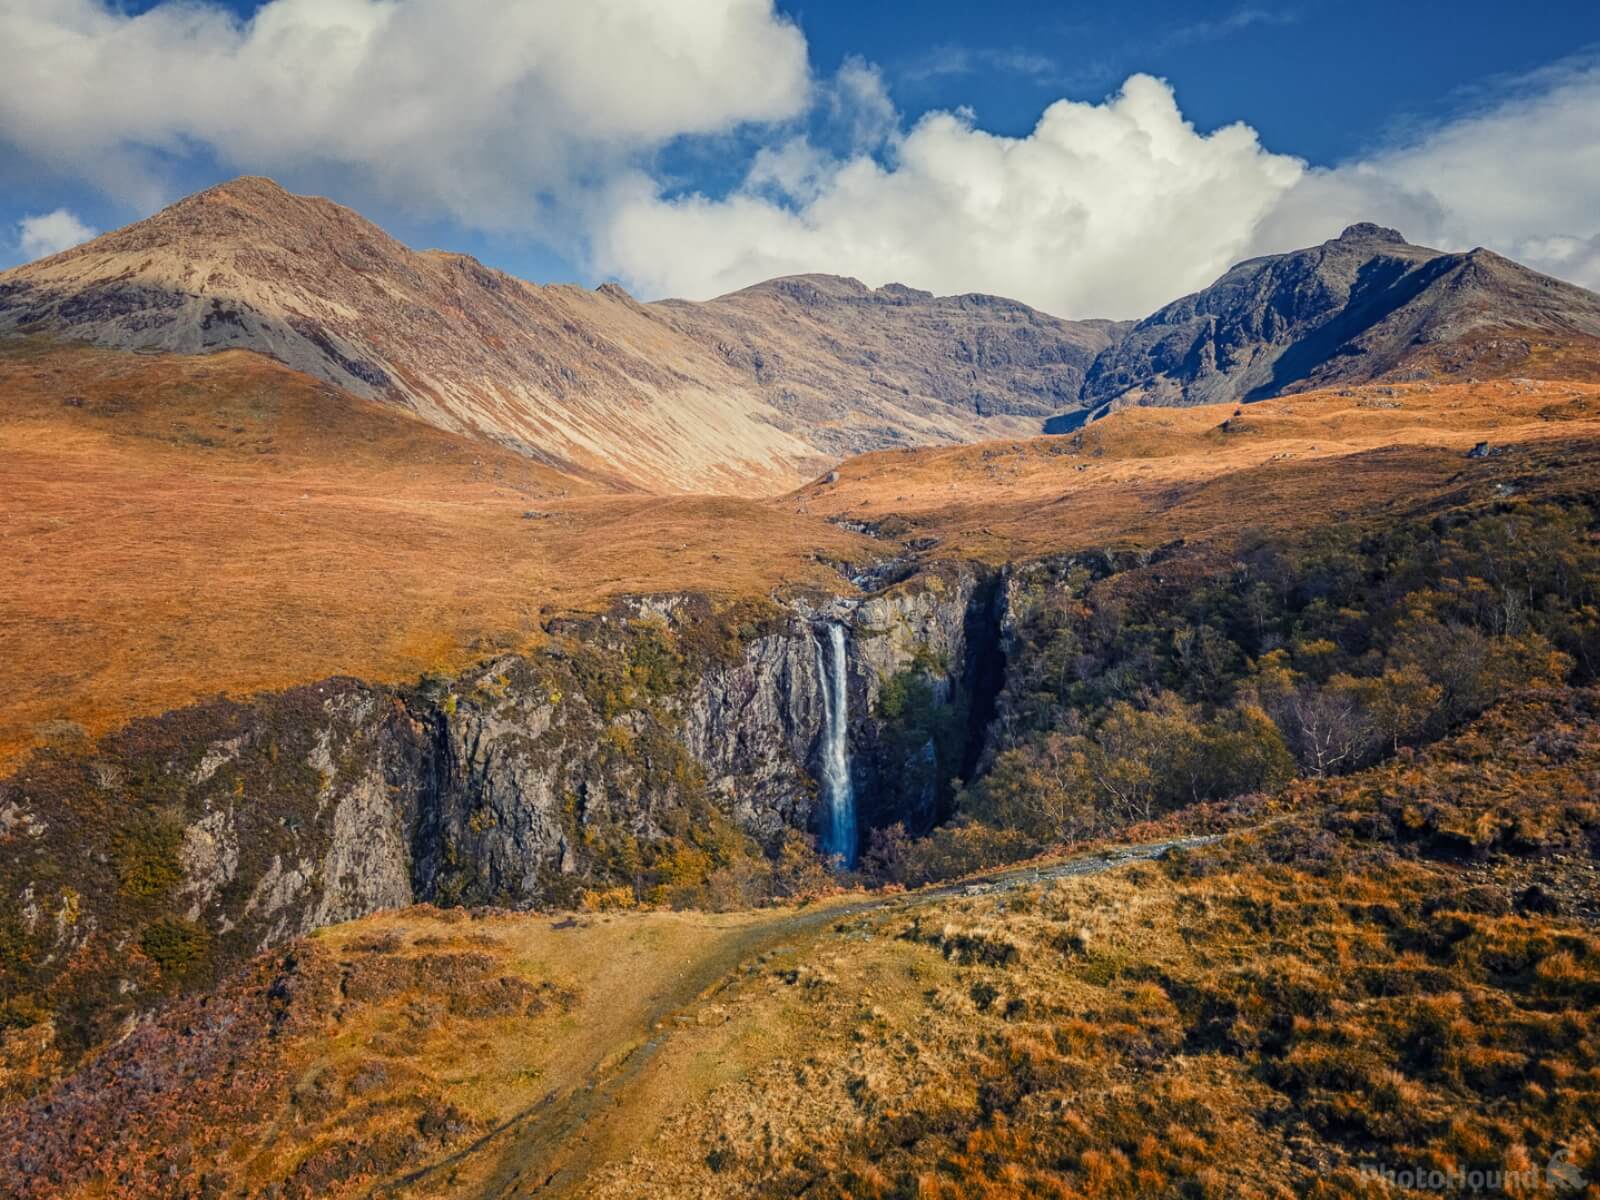 Image of Eas Mòr Waterfall by James Billings.